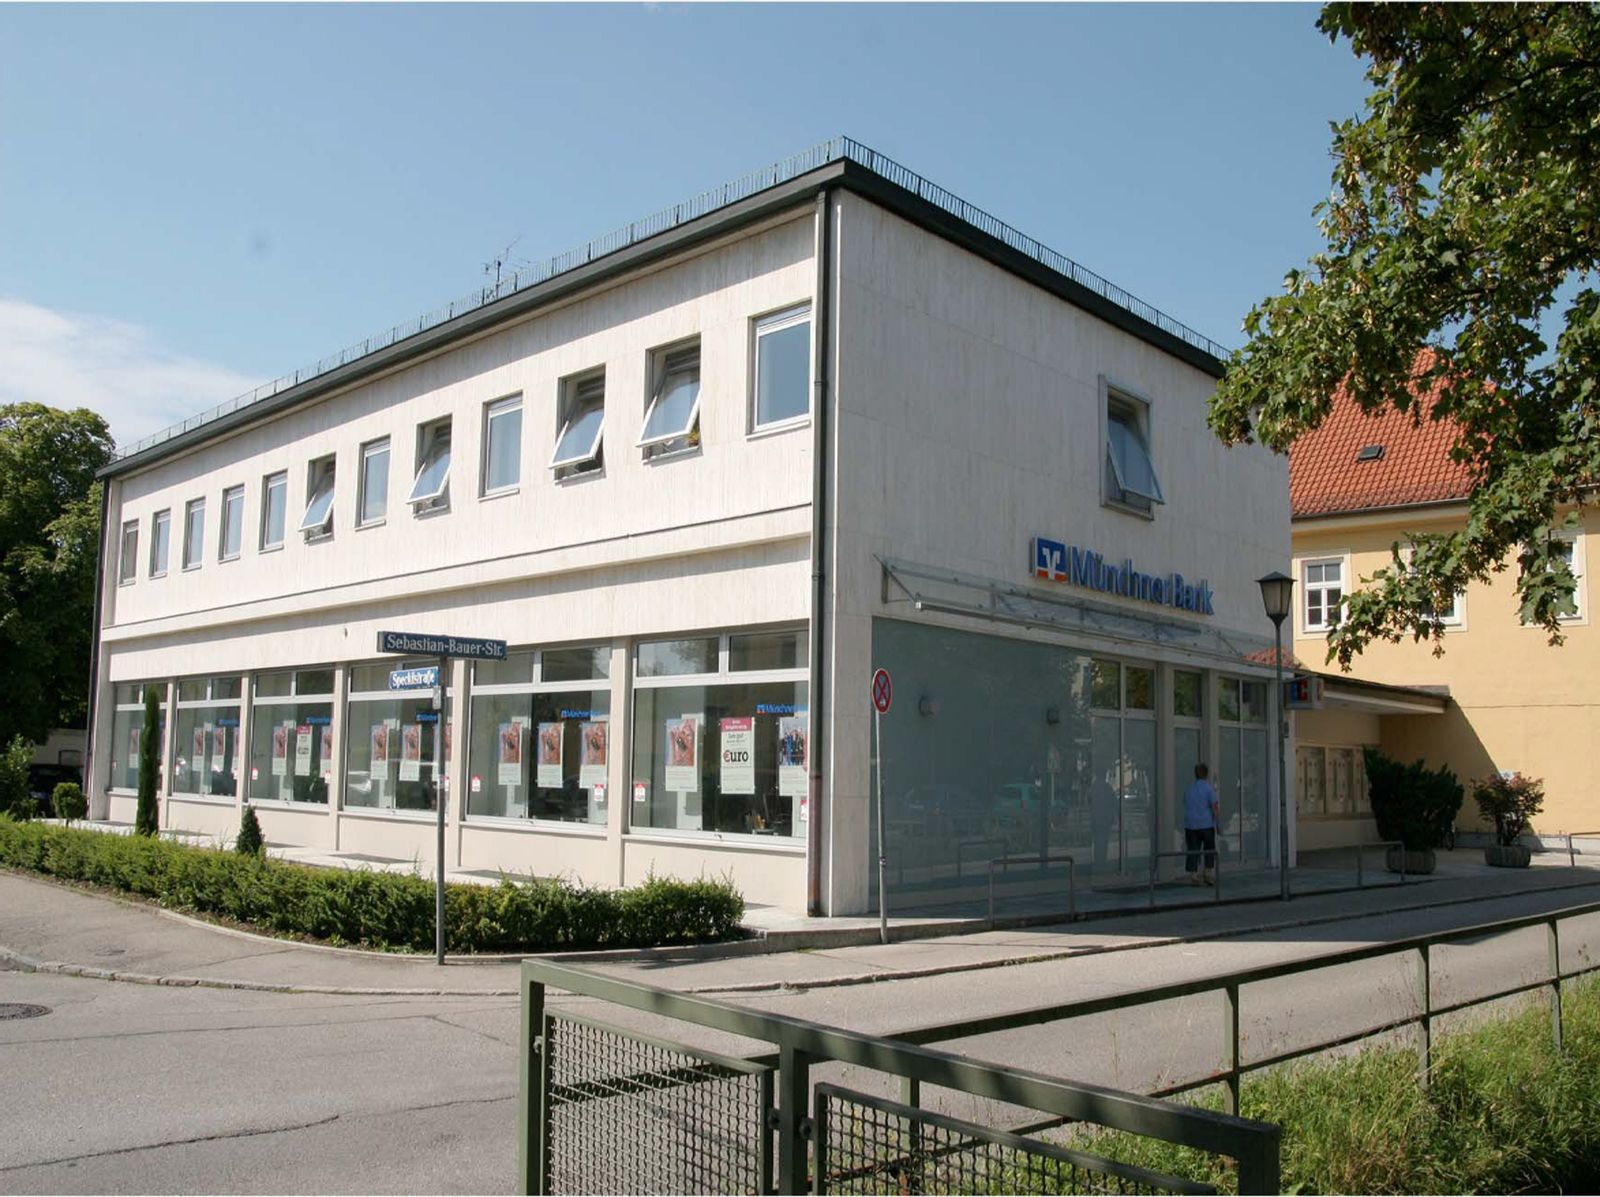 Münchner Bank, Filiale Perlach in München ⇒ in Das Örtliche